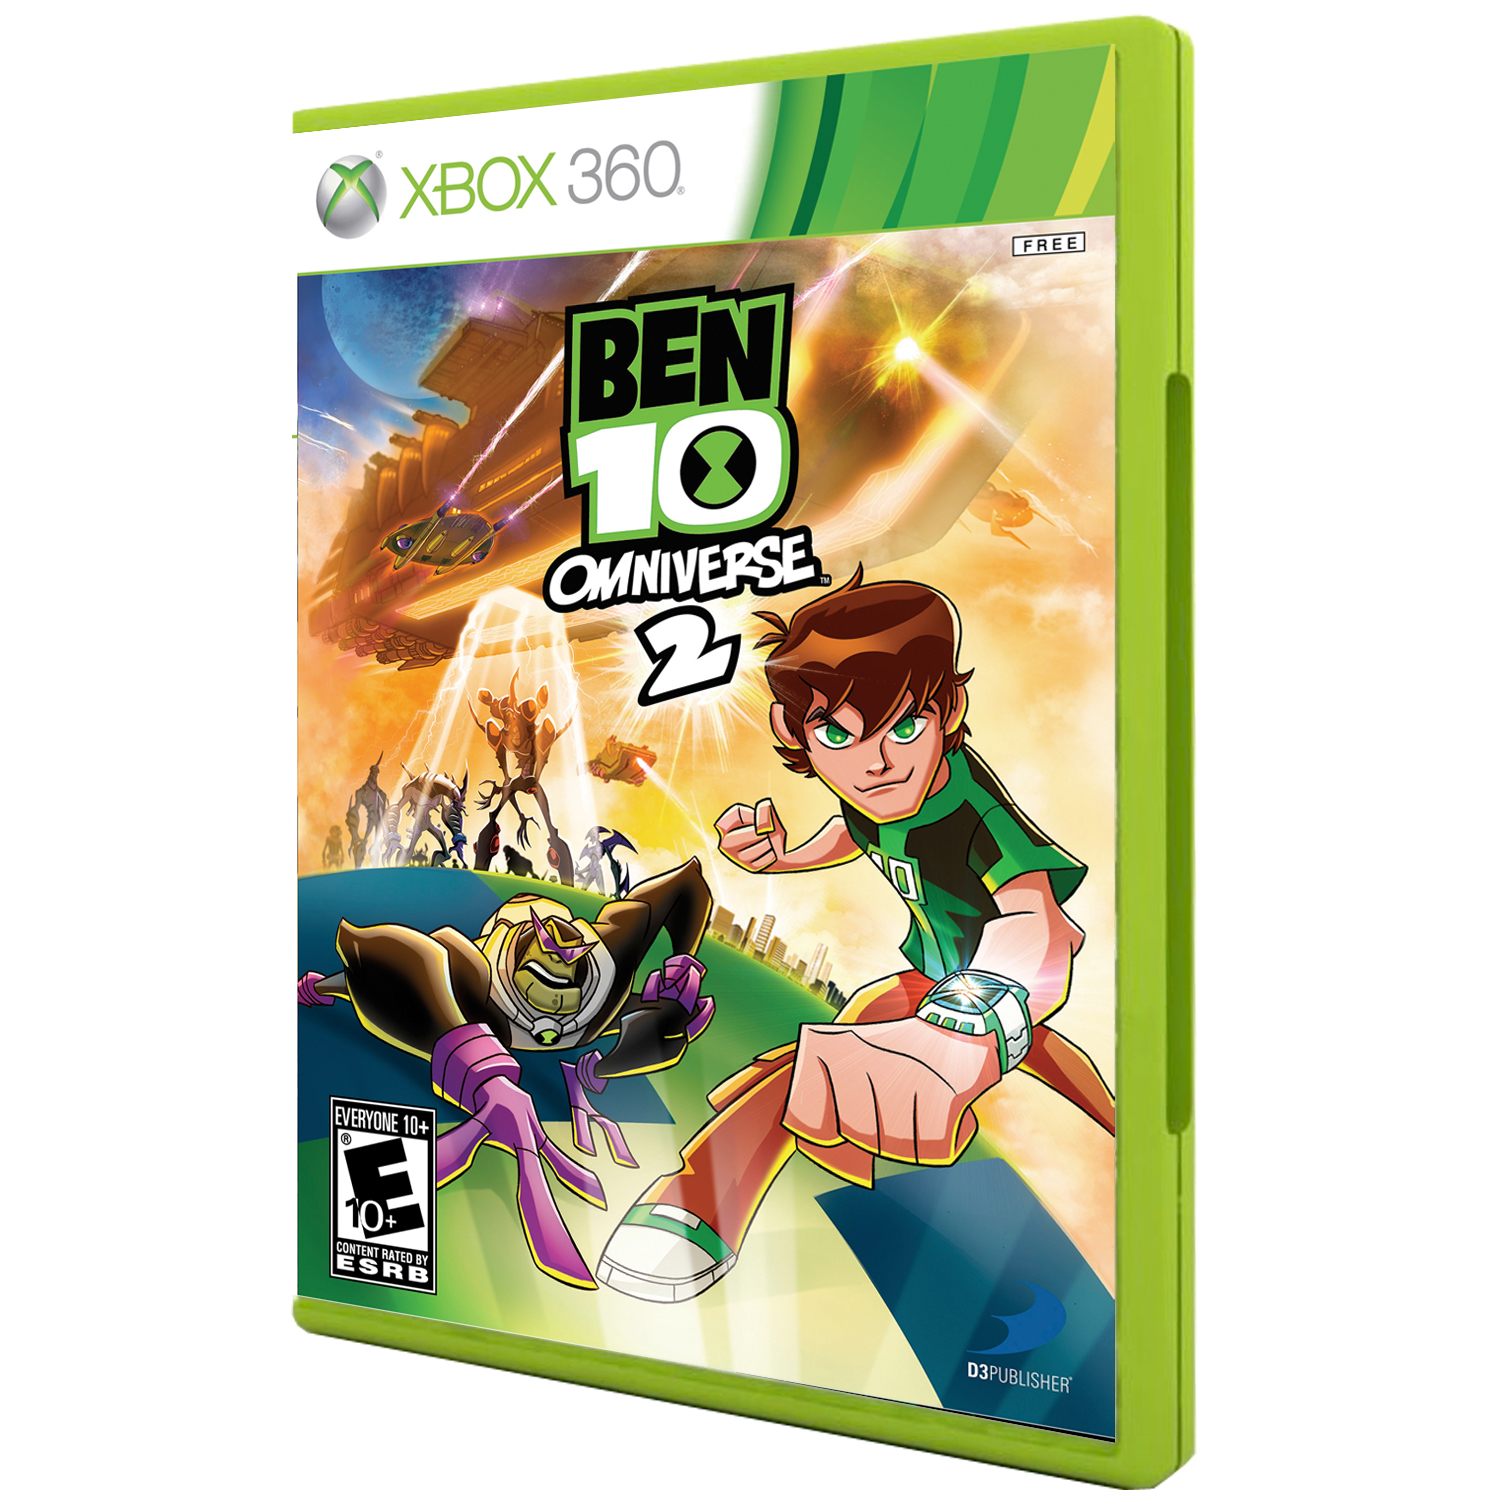 بازی Ben 10 Omniverse 2 مخصوص xbox 360